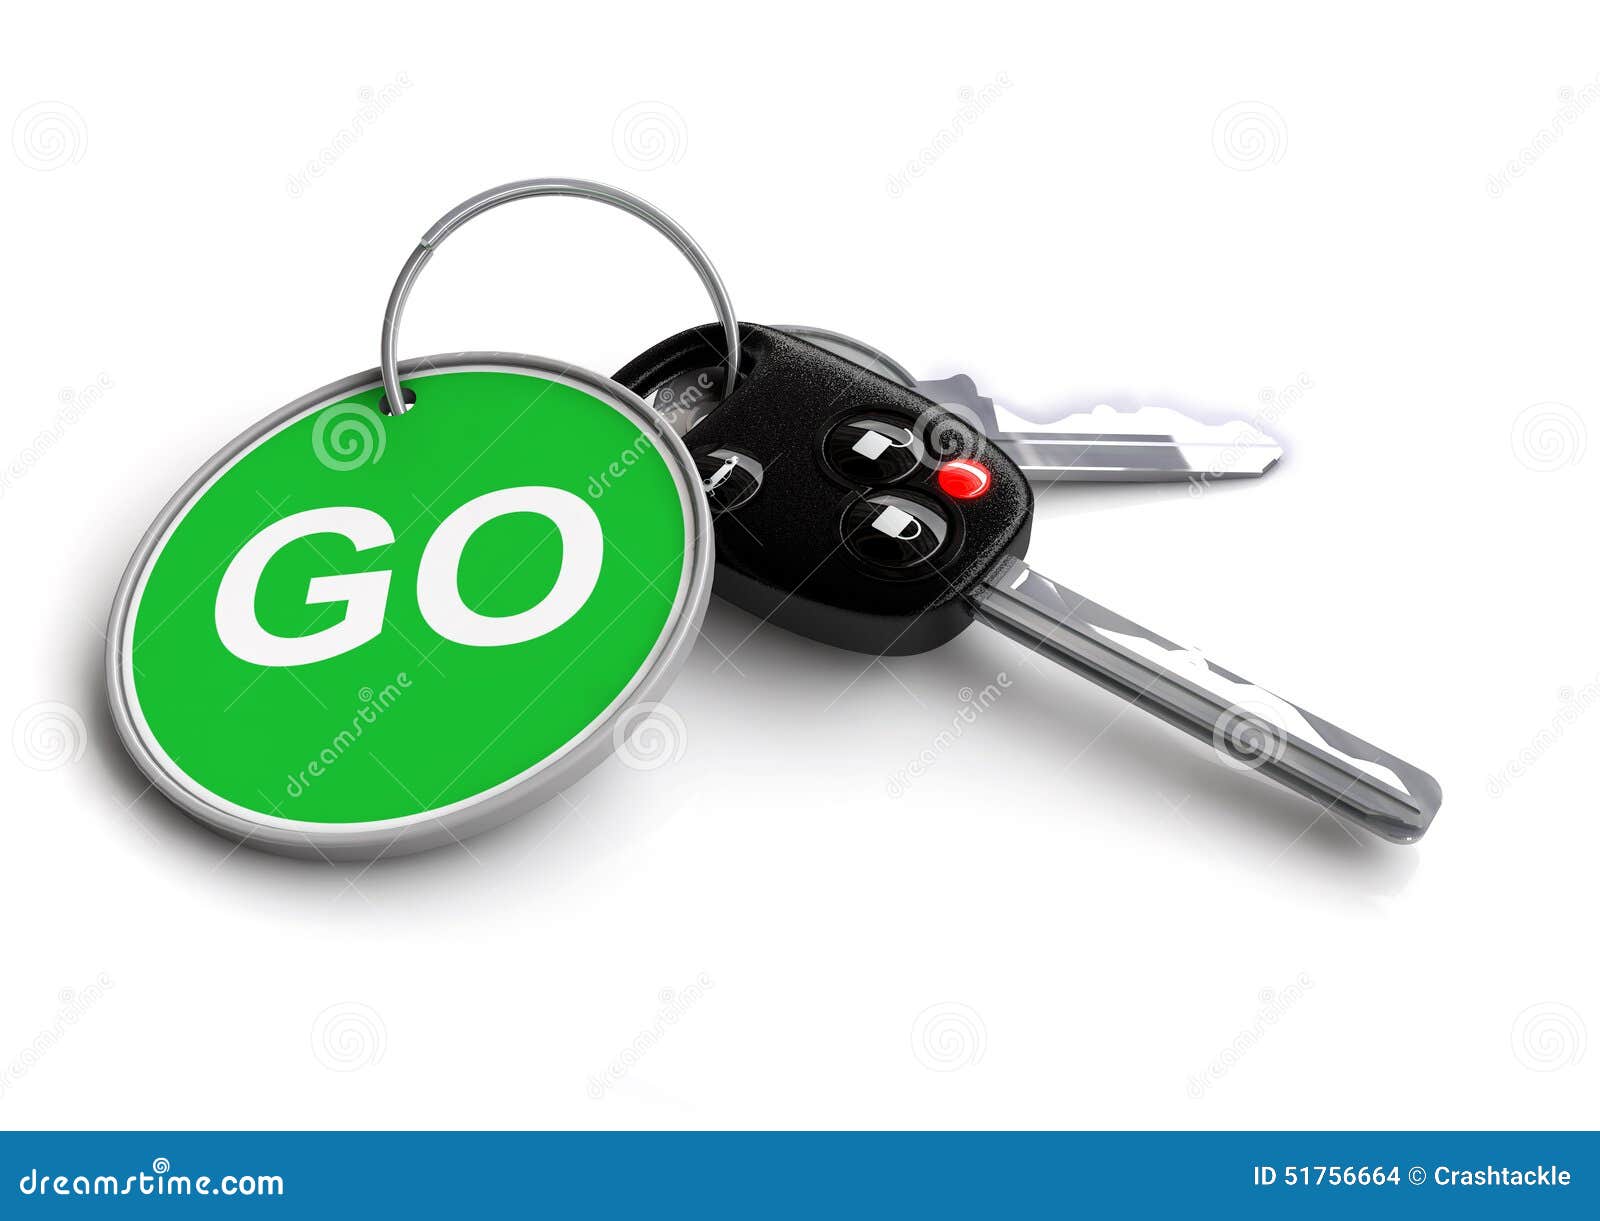 car keys with keyring: go!